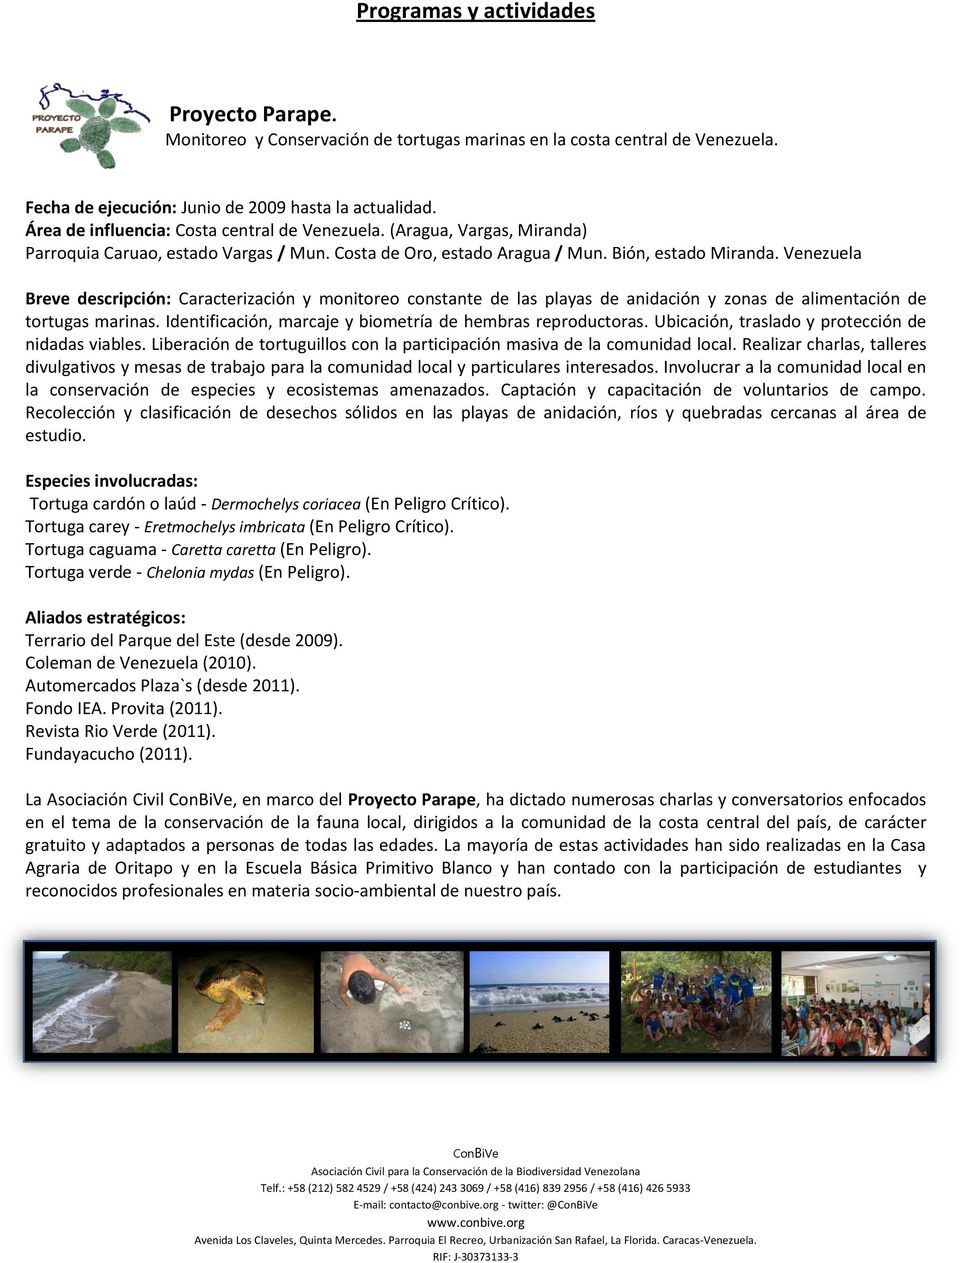 Venezuela Breve descripción: Caracterización y monitoreo constante de las playas de anidación y zonas de alimentación de tortugas marinas. Identificación, marcaje y biometría de hembras reproductoras.